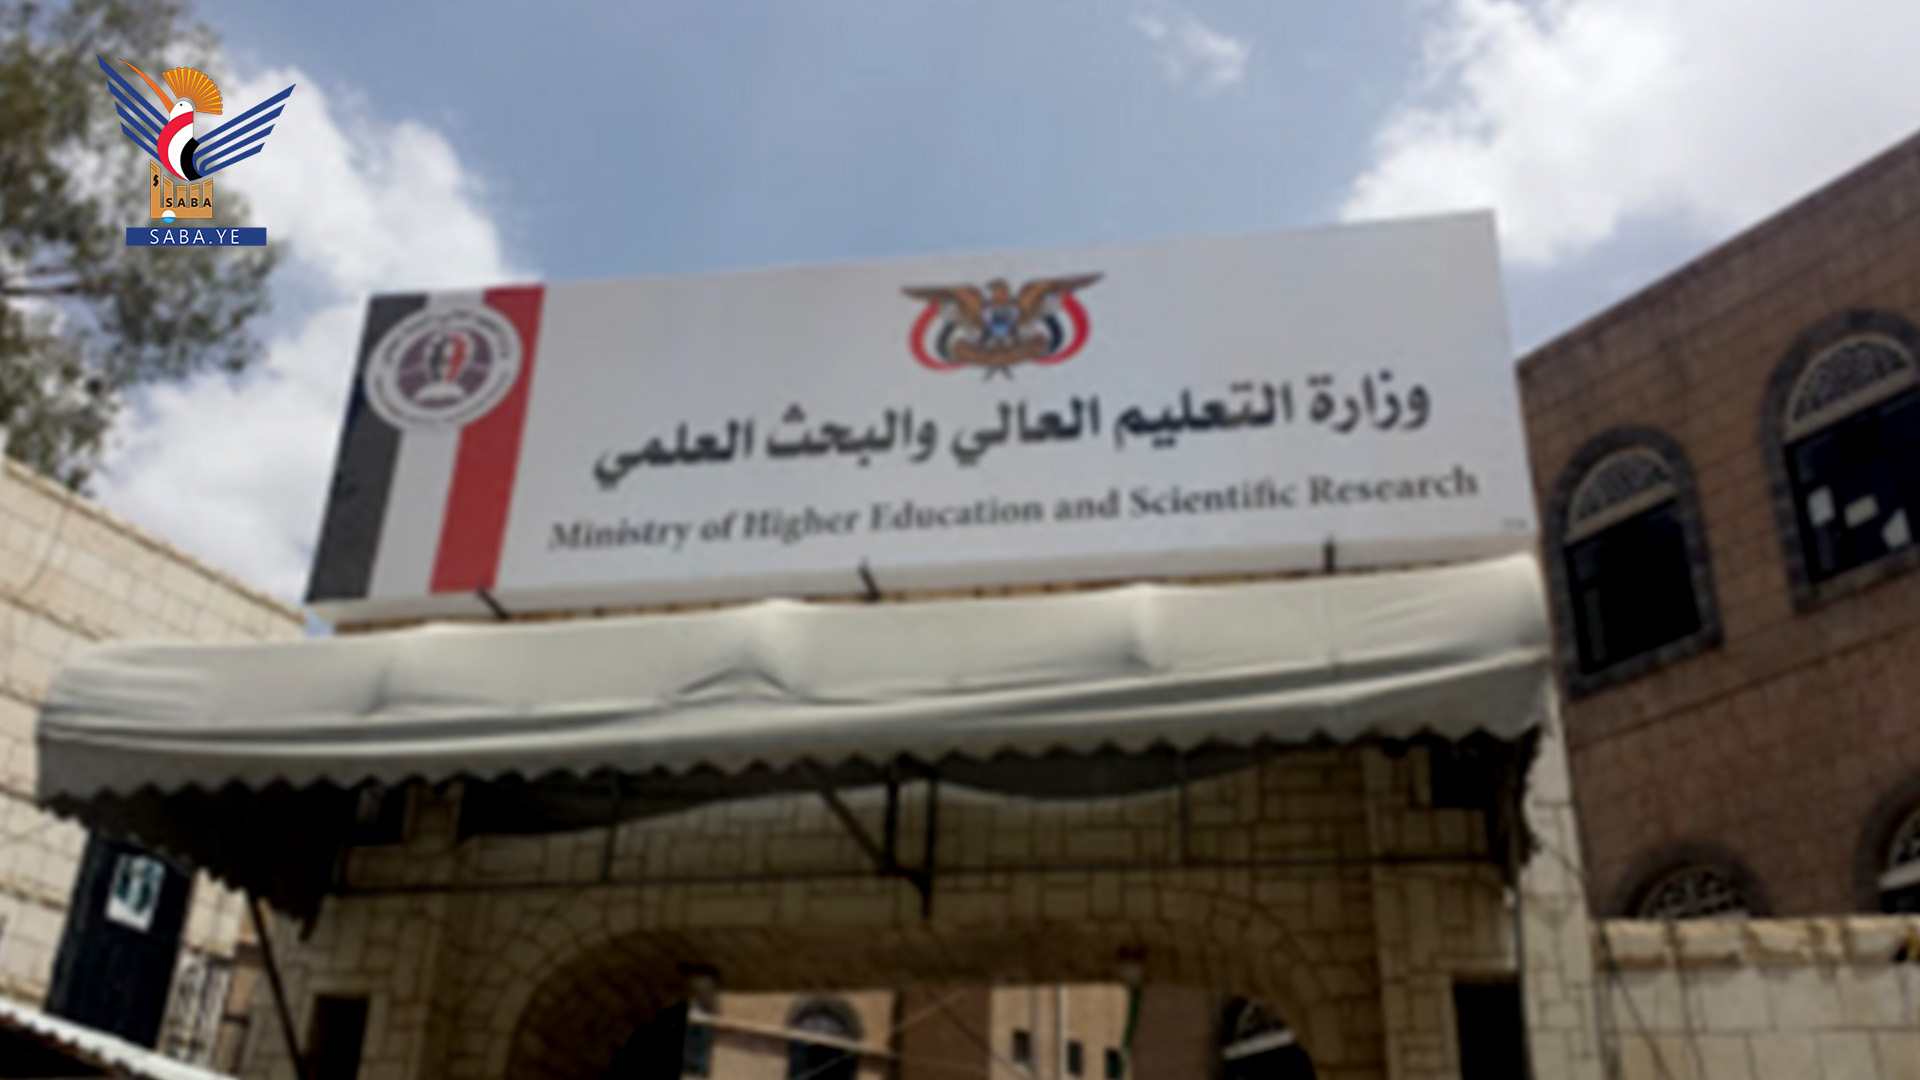  Educacion superior anuncia la apertura de candidaturas para plazas libres en universidades yemenítas